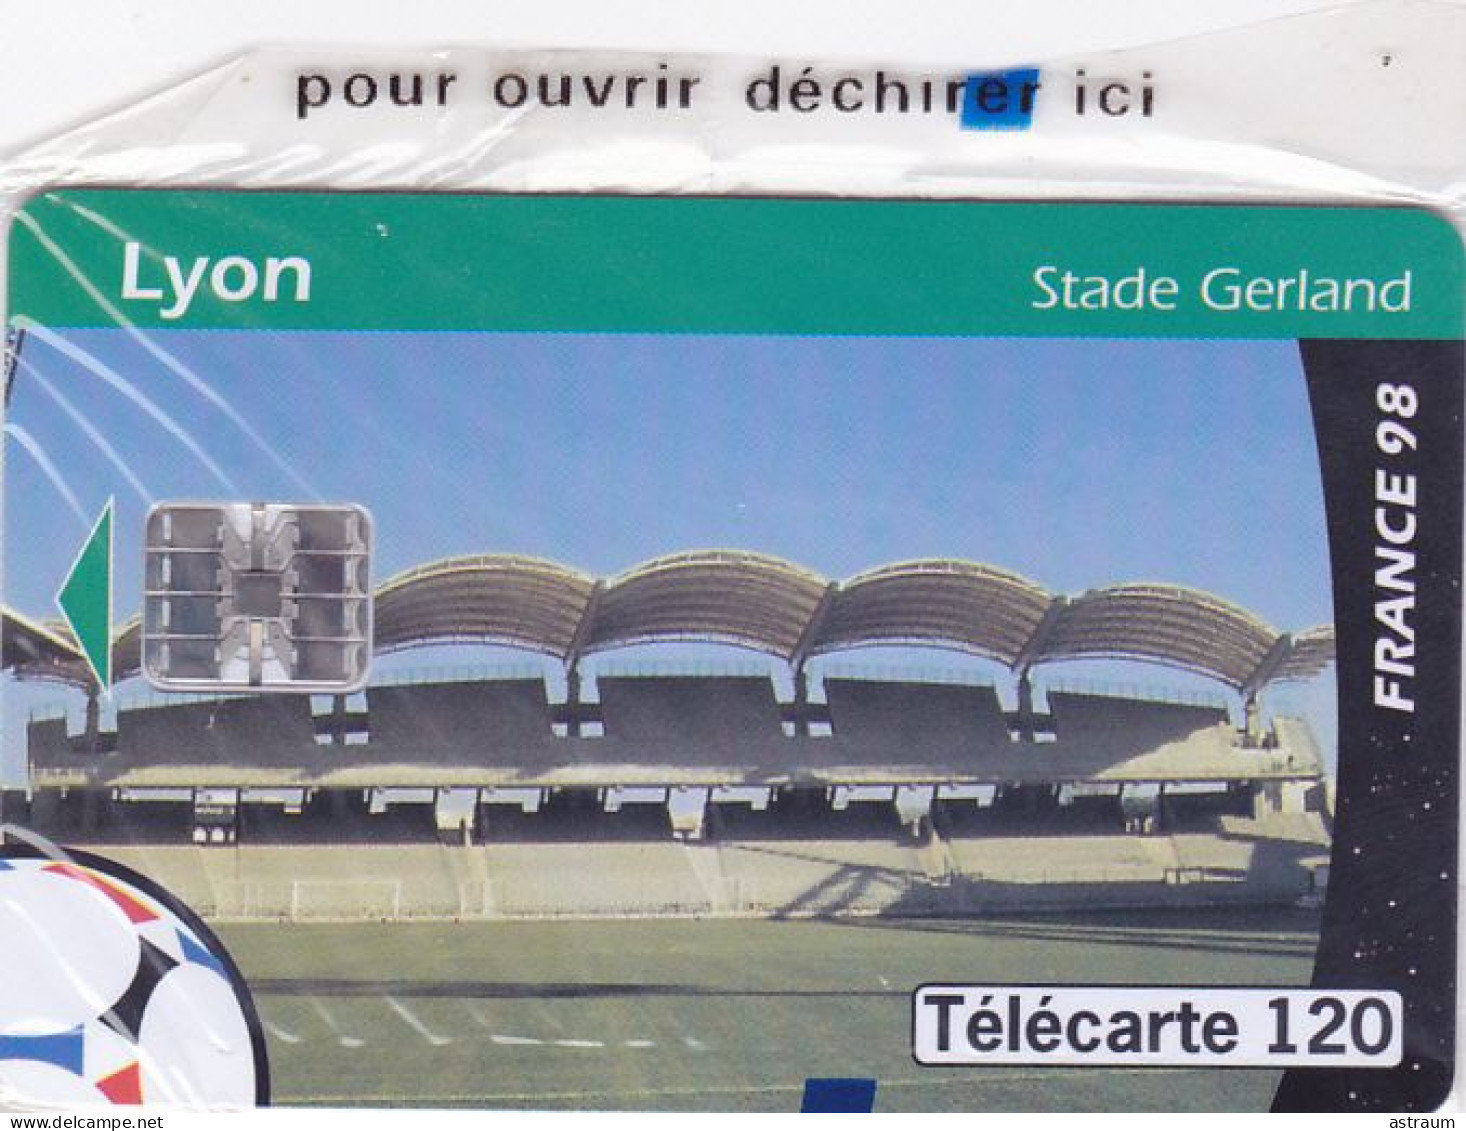 Telecarte Publique F875 NSB - Lyon Stade Gerland - 120 U - Sc7 - 1998 - 1998